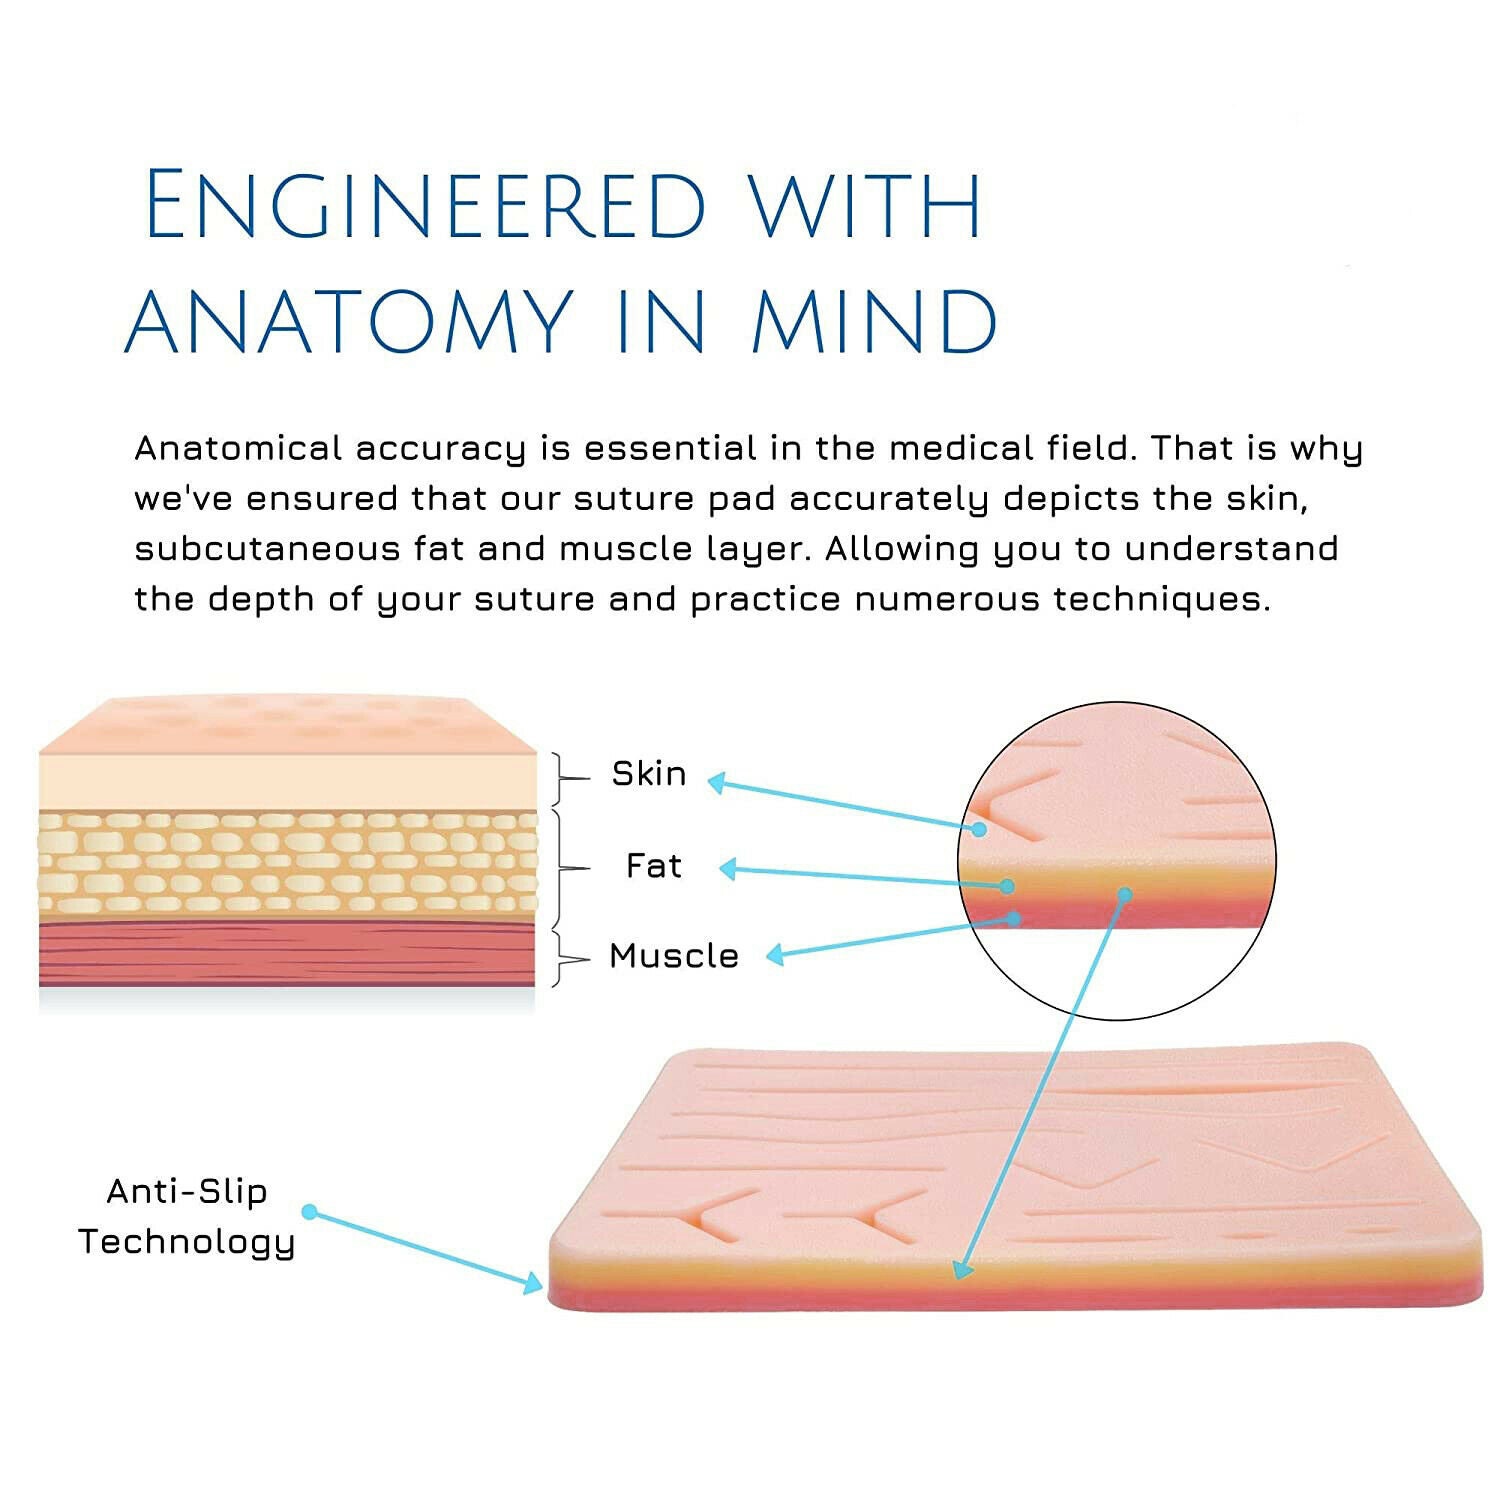 MediStitch - Le kit de suture fait par et pour les étudiants de medecine!